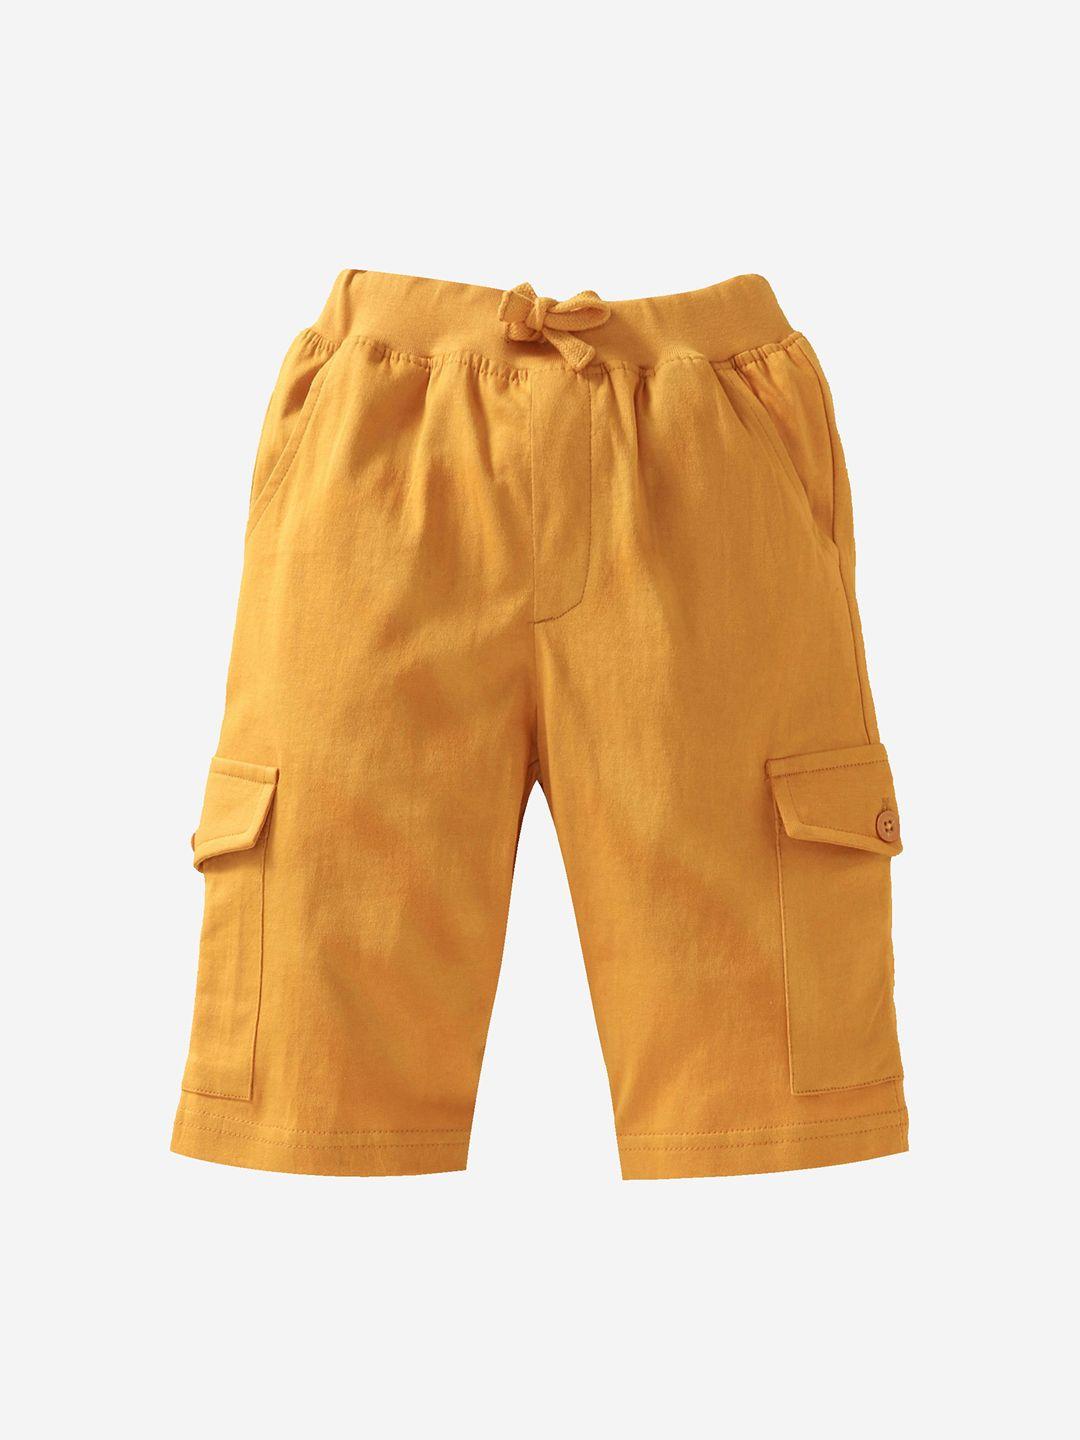 KiddoPanti Boys Mustard Solid Shorts